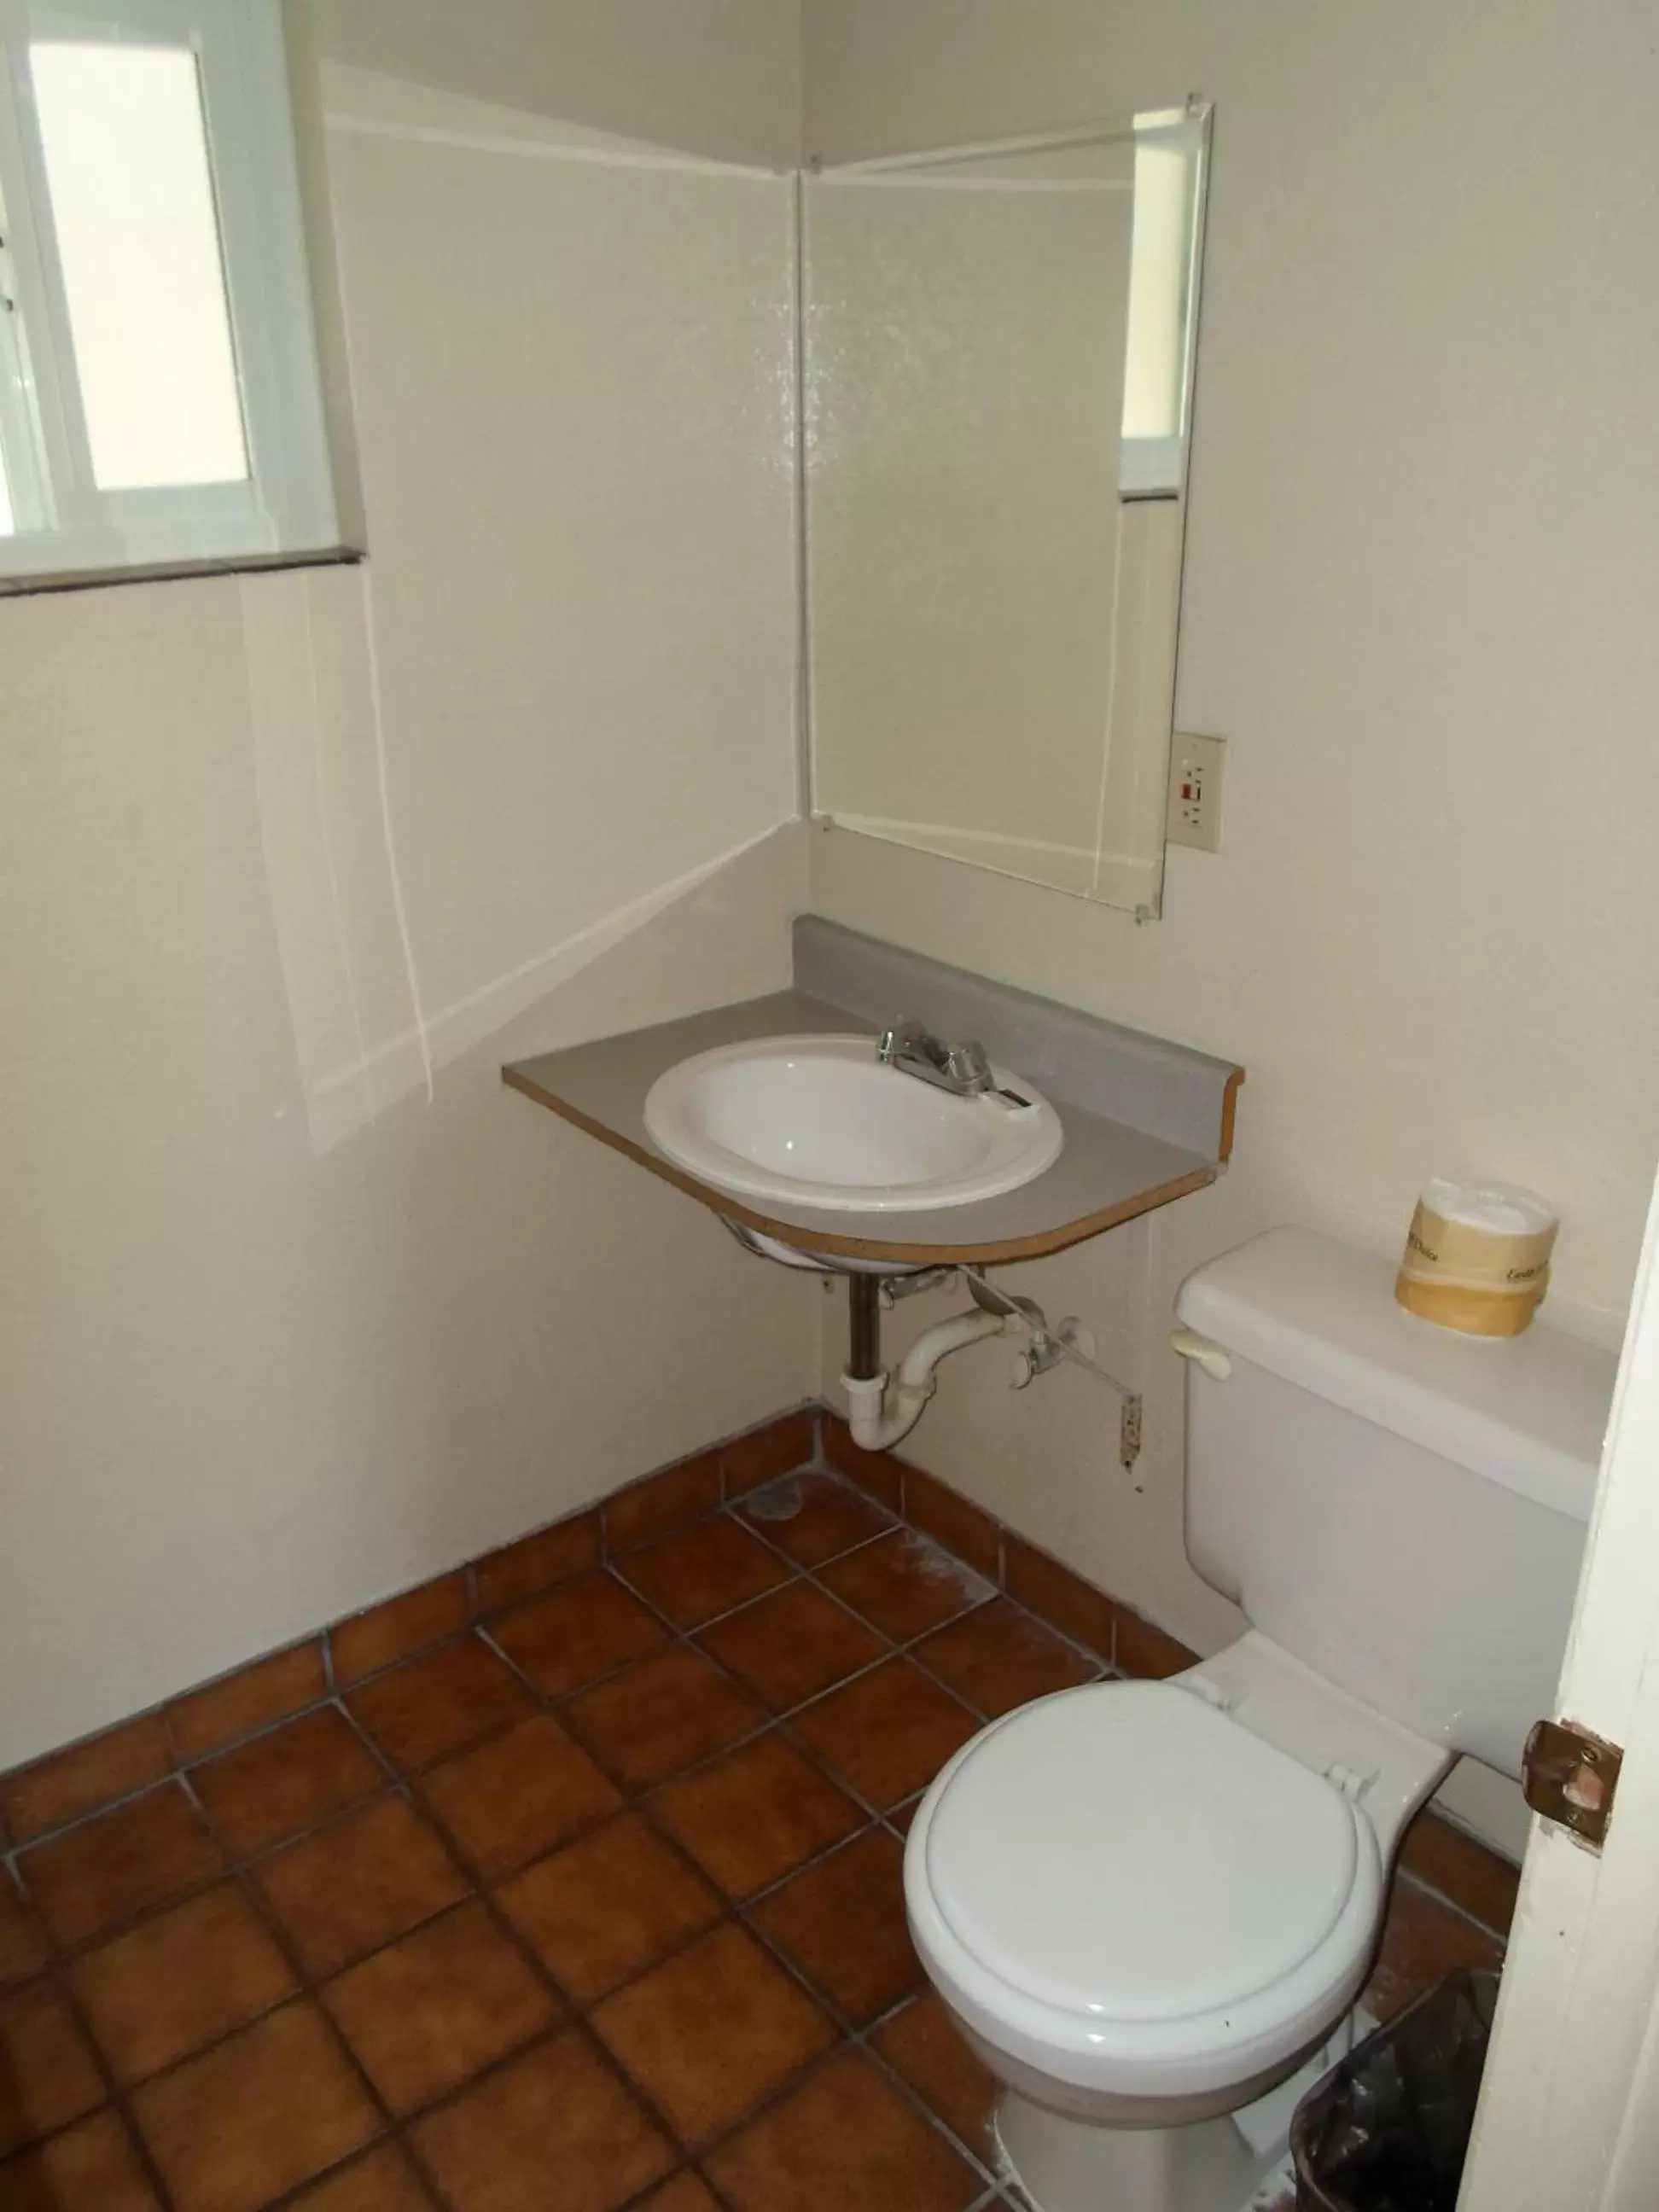 Day, Bathroom in Budget Inn Morgan Hill